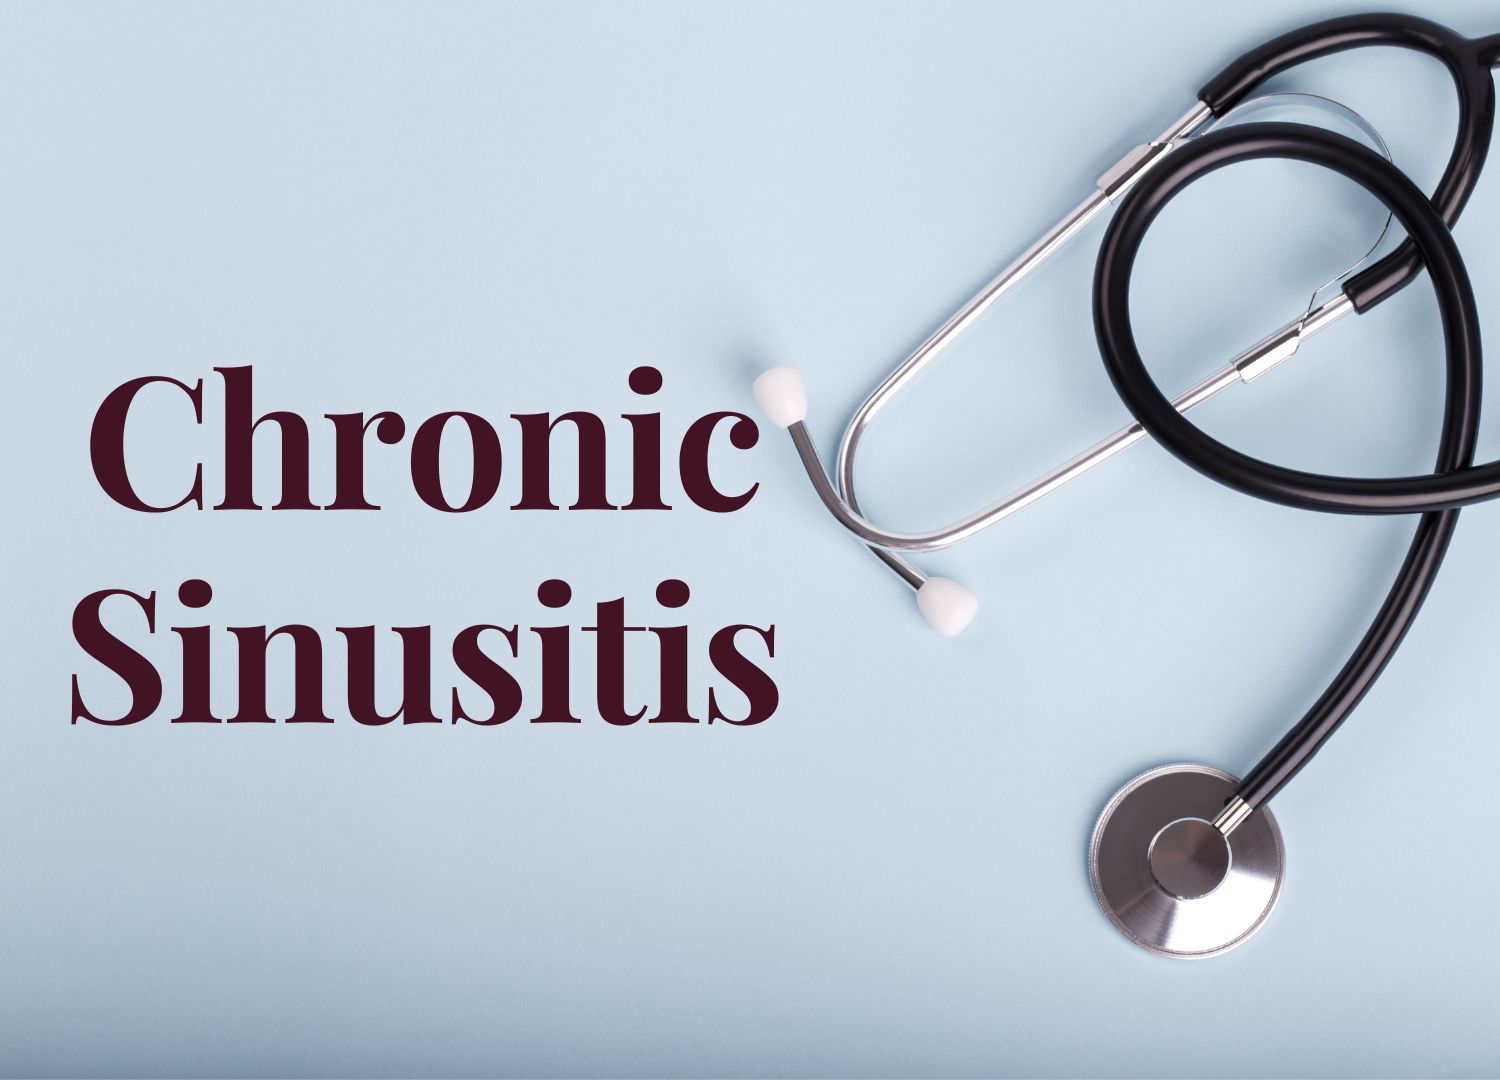 Chronic sinusitis